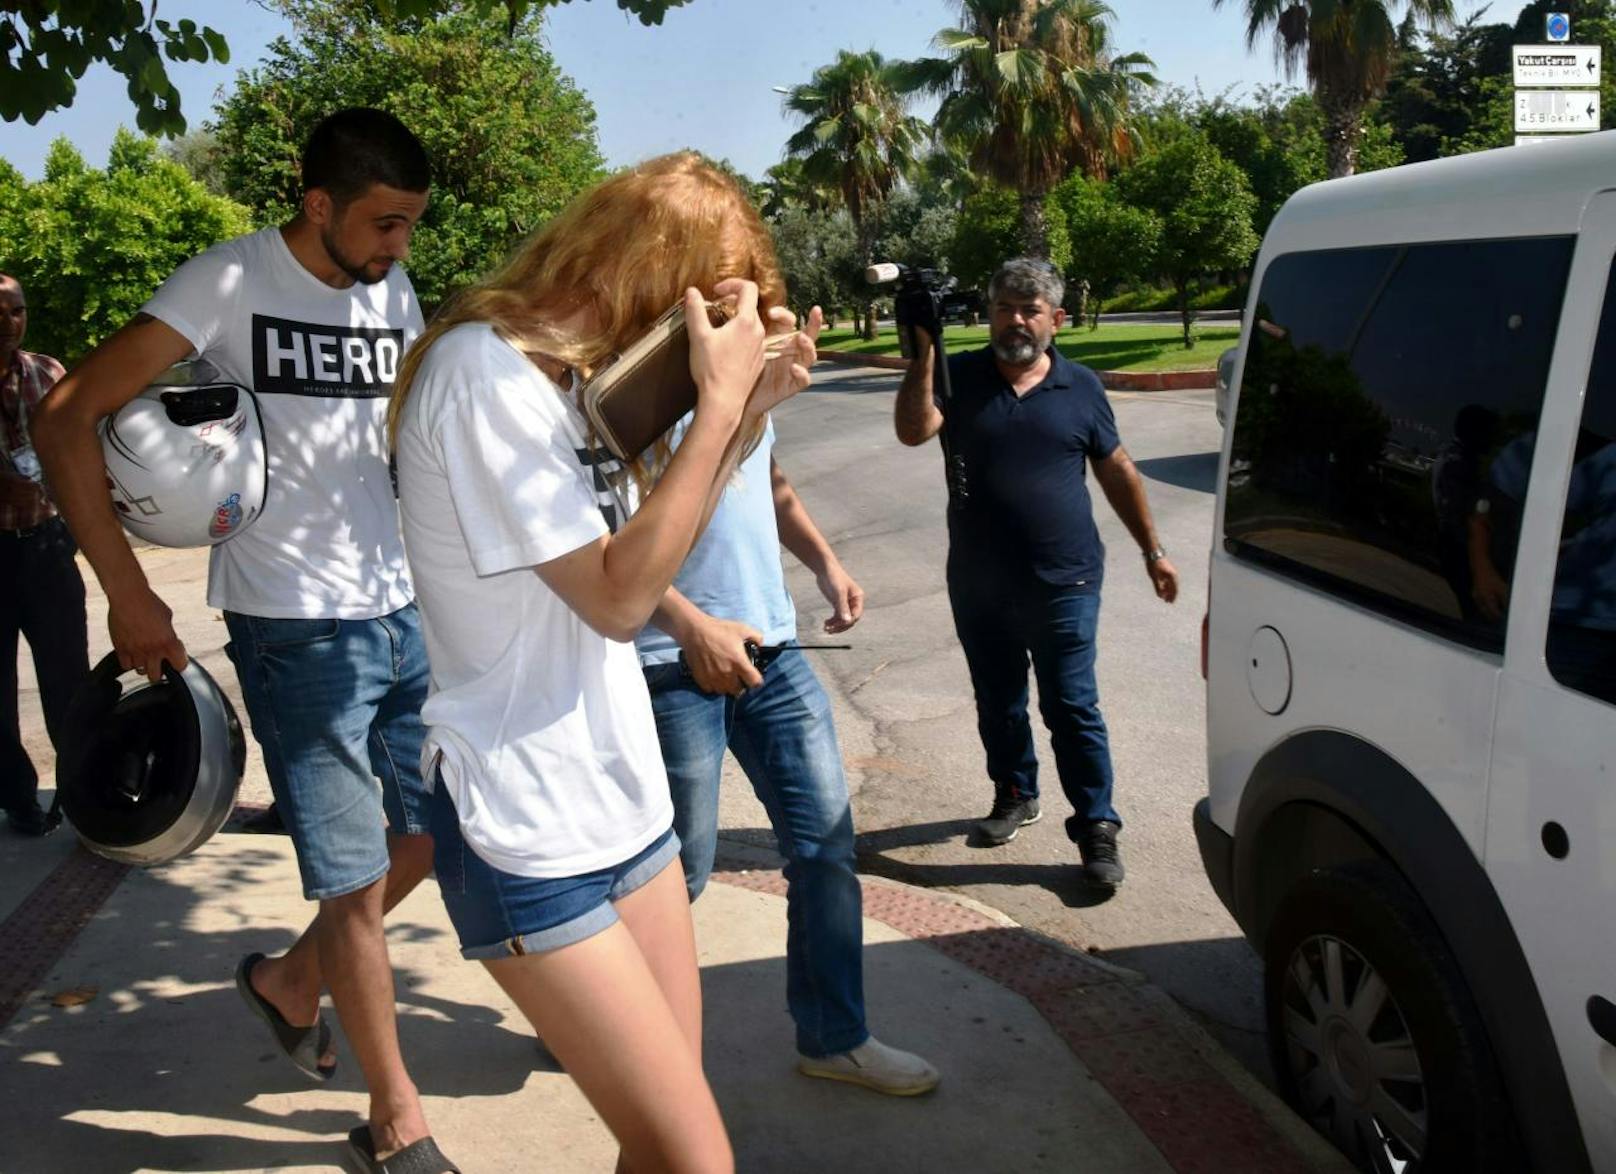 Zwei Studenten auf einem Motorrad wurden am 22. Juli 2017 in Antalya verhaftet. Ihr Verbrechen: die weißen T-Shirts mit der Aufschrift "Hero", die sie trugen.